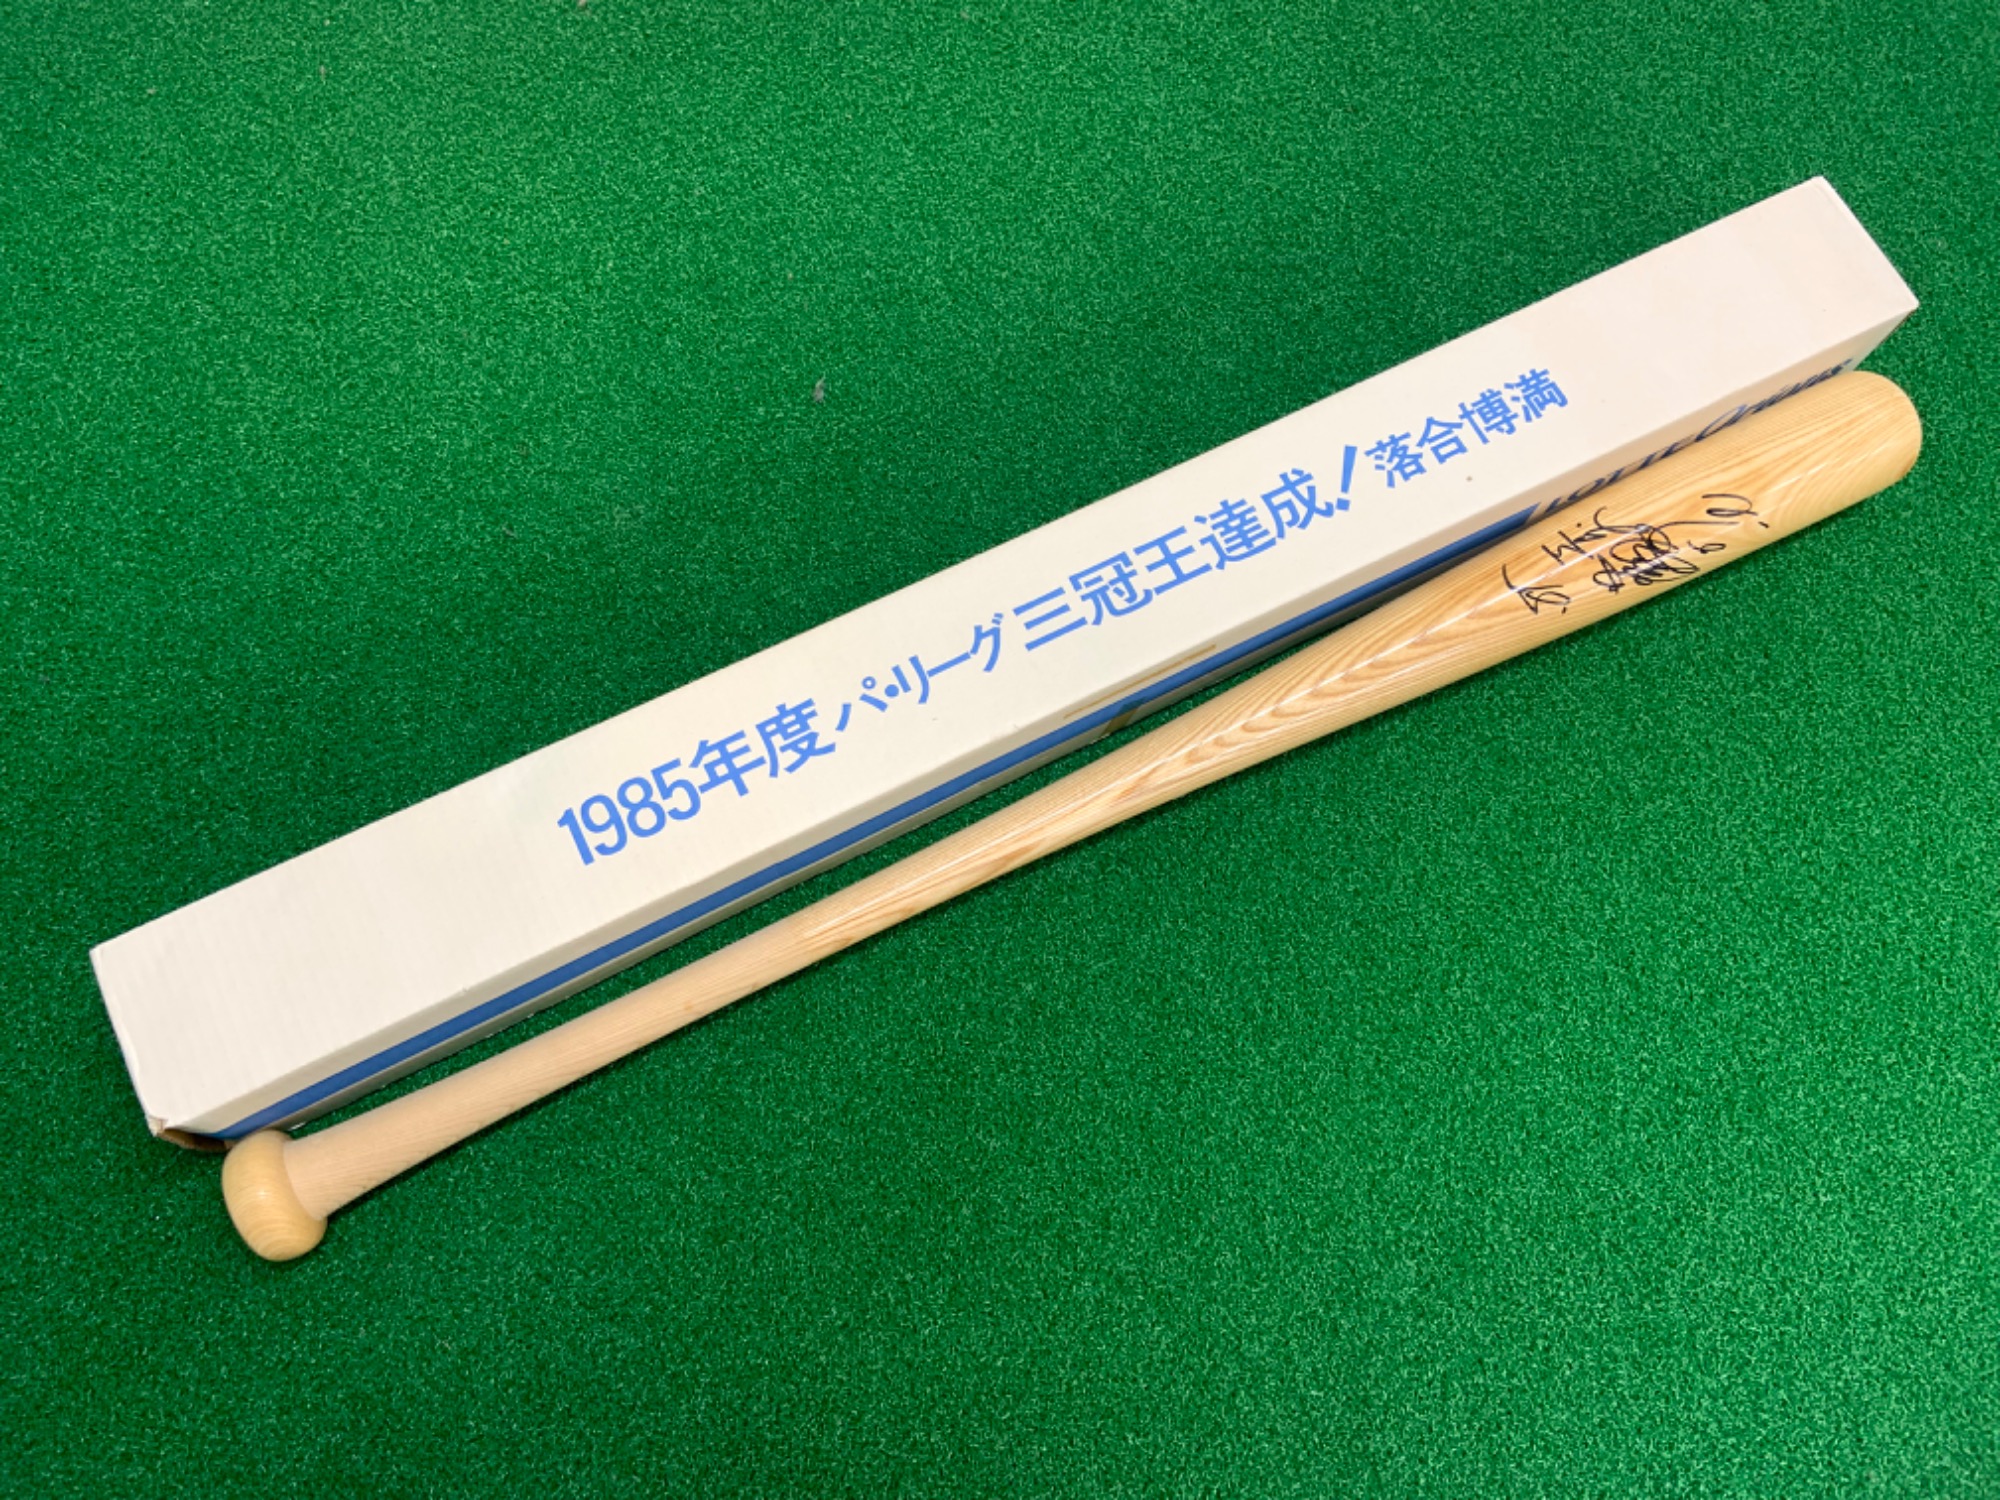 102599円 新商品 バット 落合博満 三冠王 記念バット